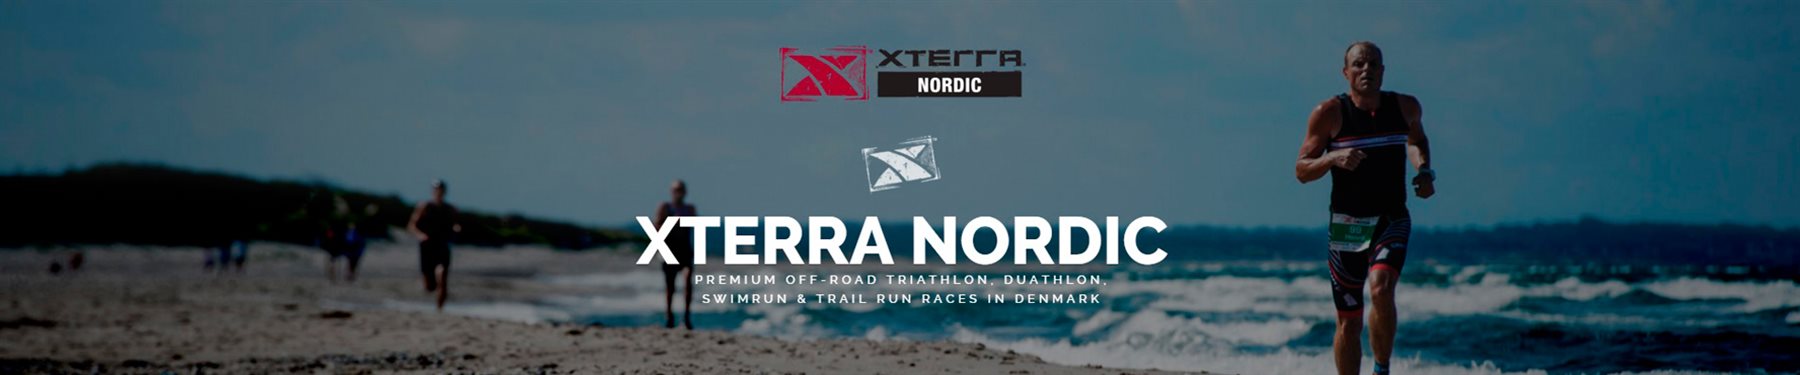 XTERRA Norway 2018